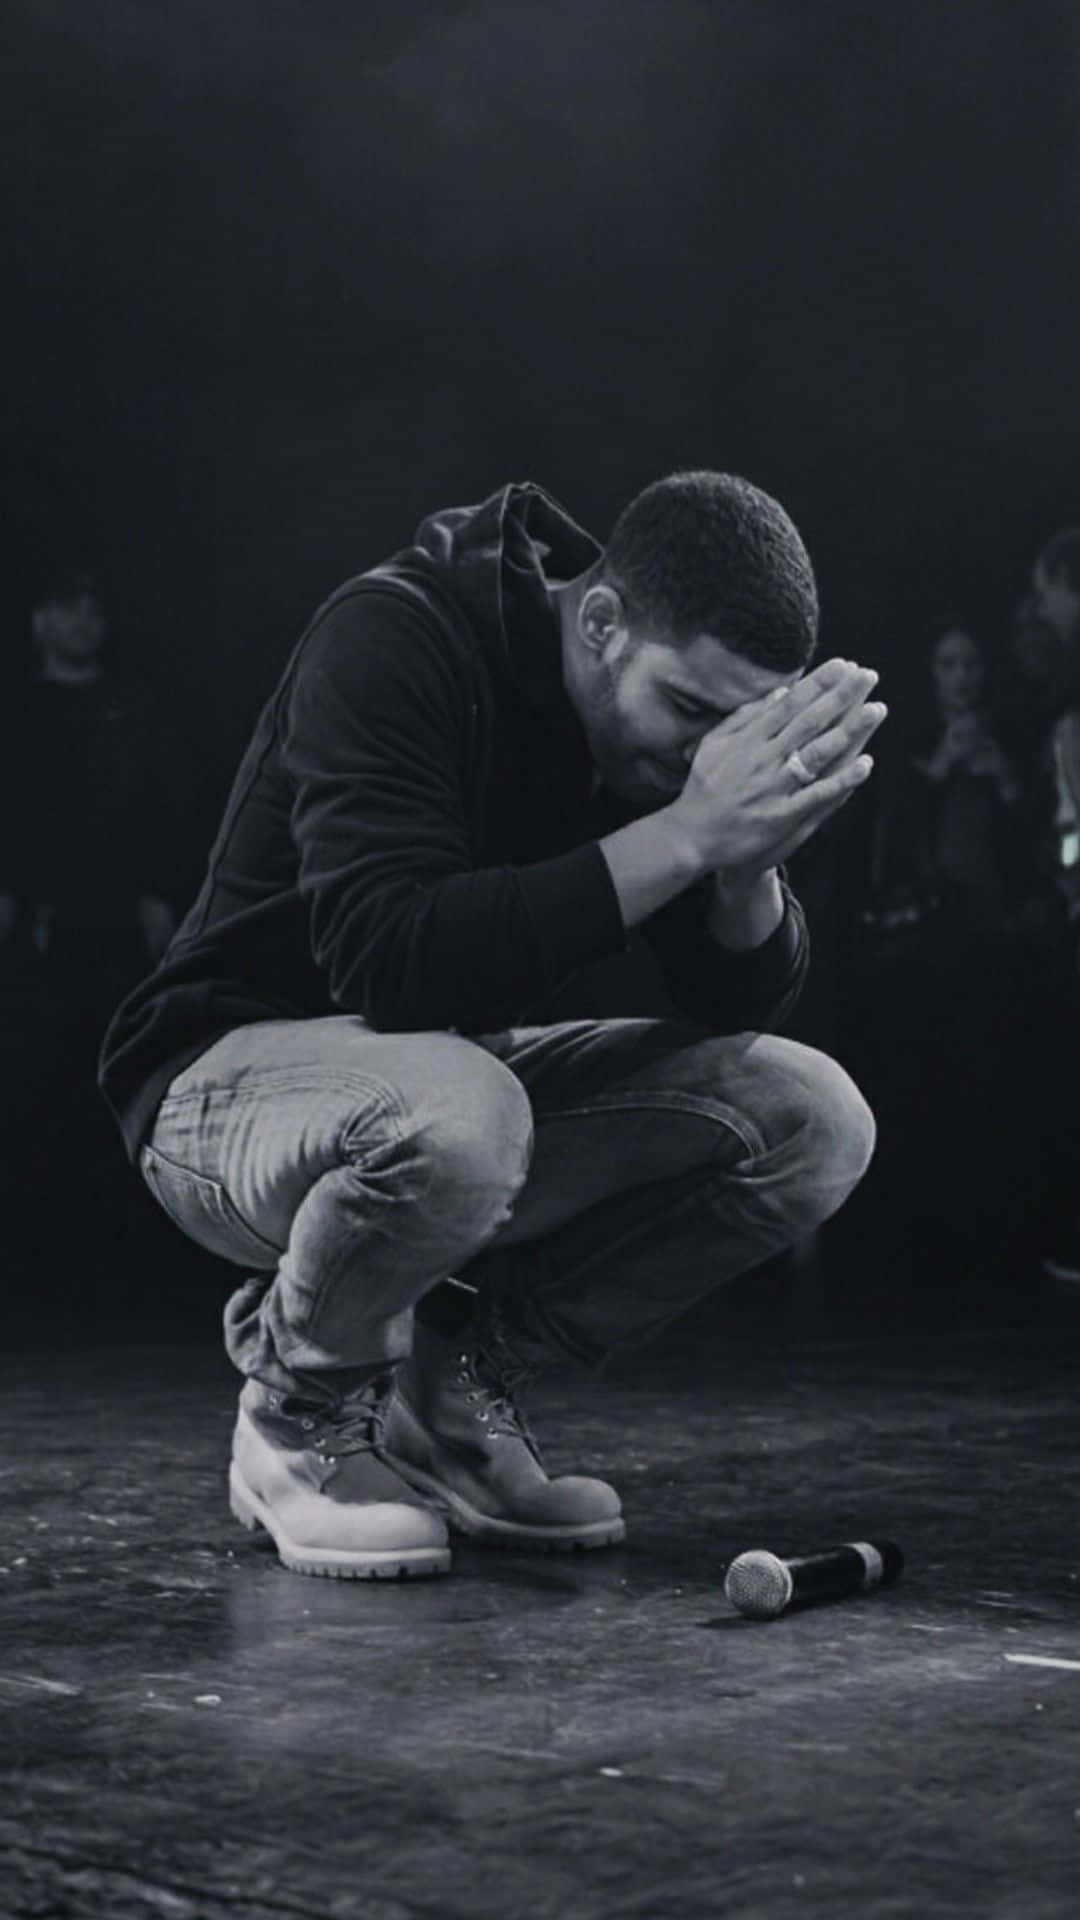 Kännpassionen I Texterna Från Kanadensiska Rapparen Drake På Dator- Eller Mobilskärmen. Wallpaper